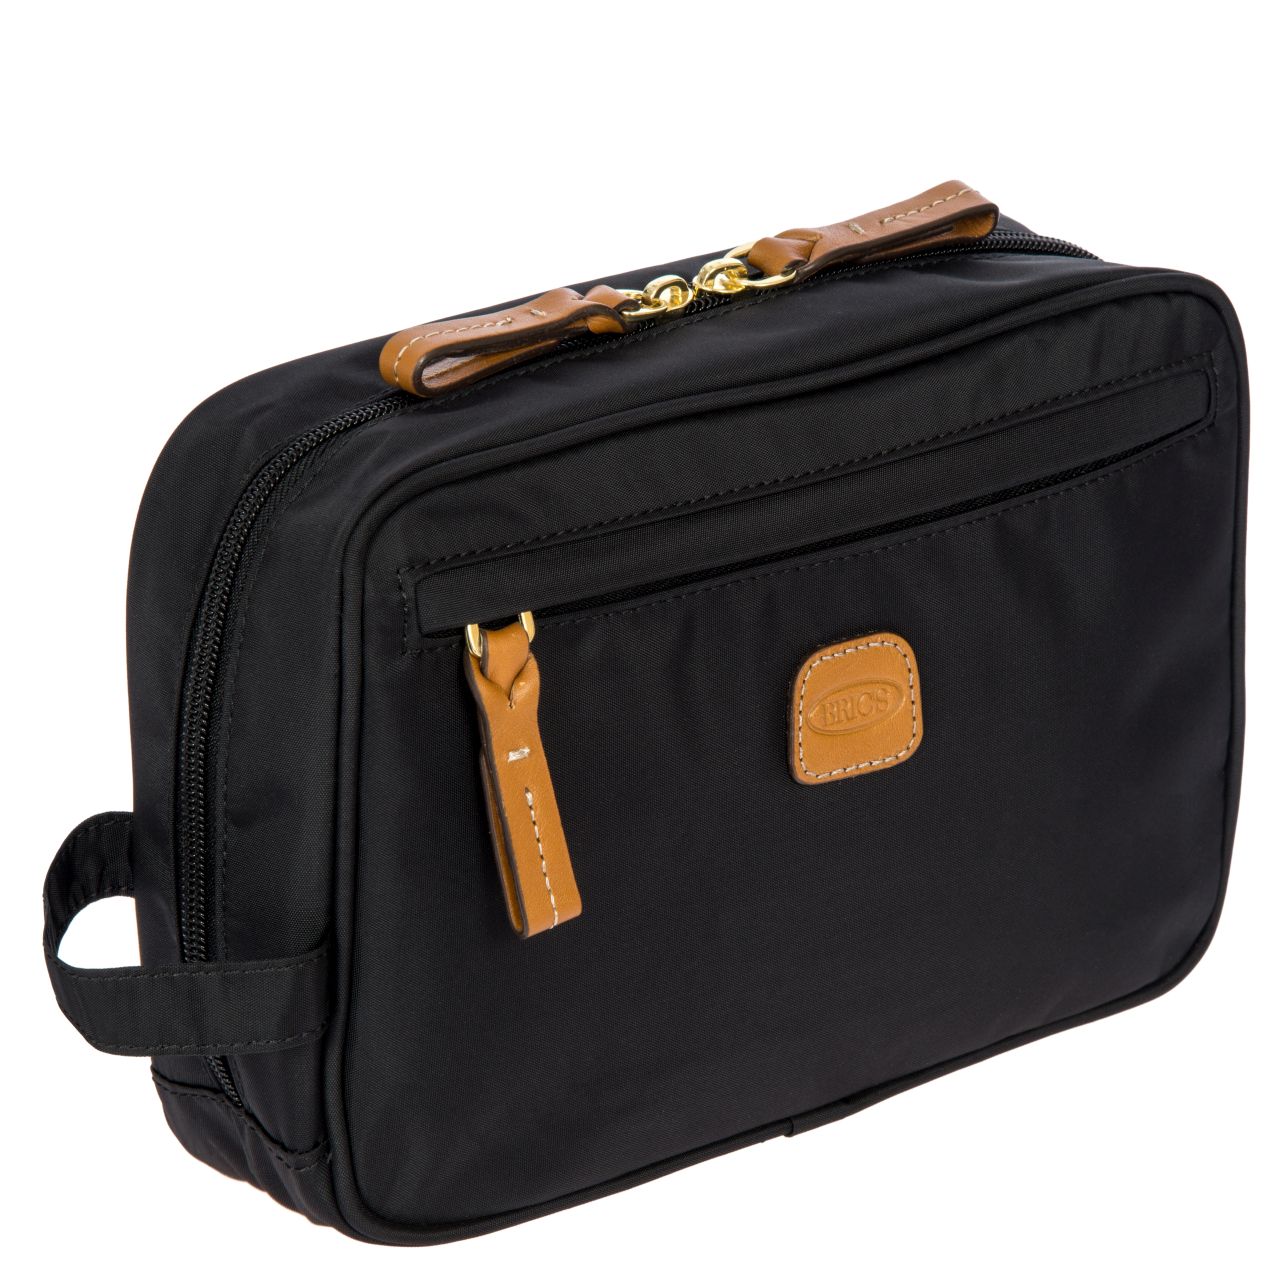 Brics X-Bag Urban Travel Kit black